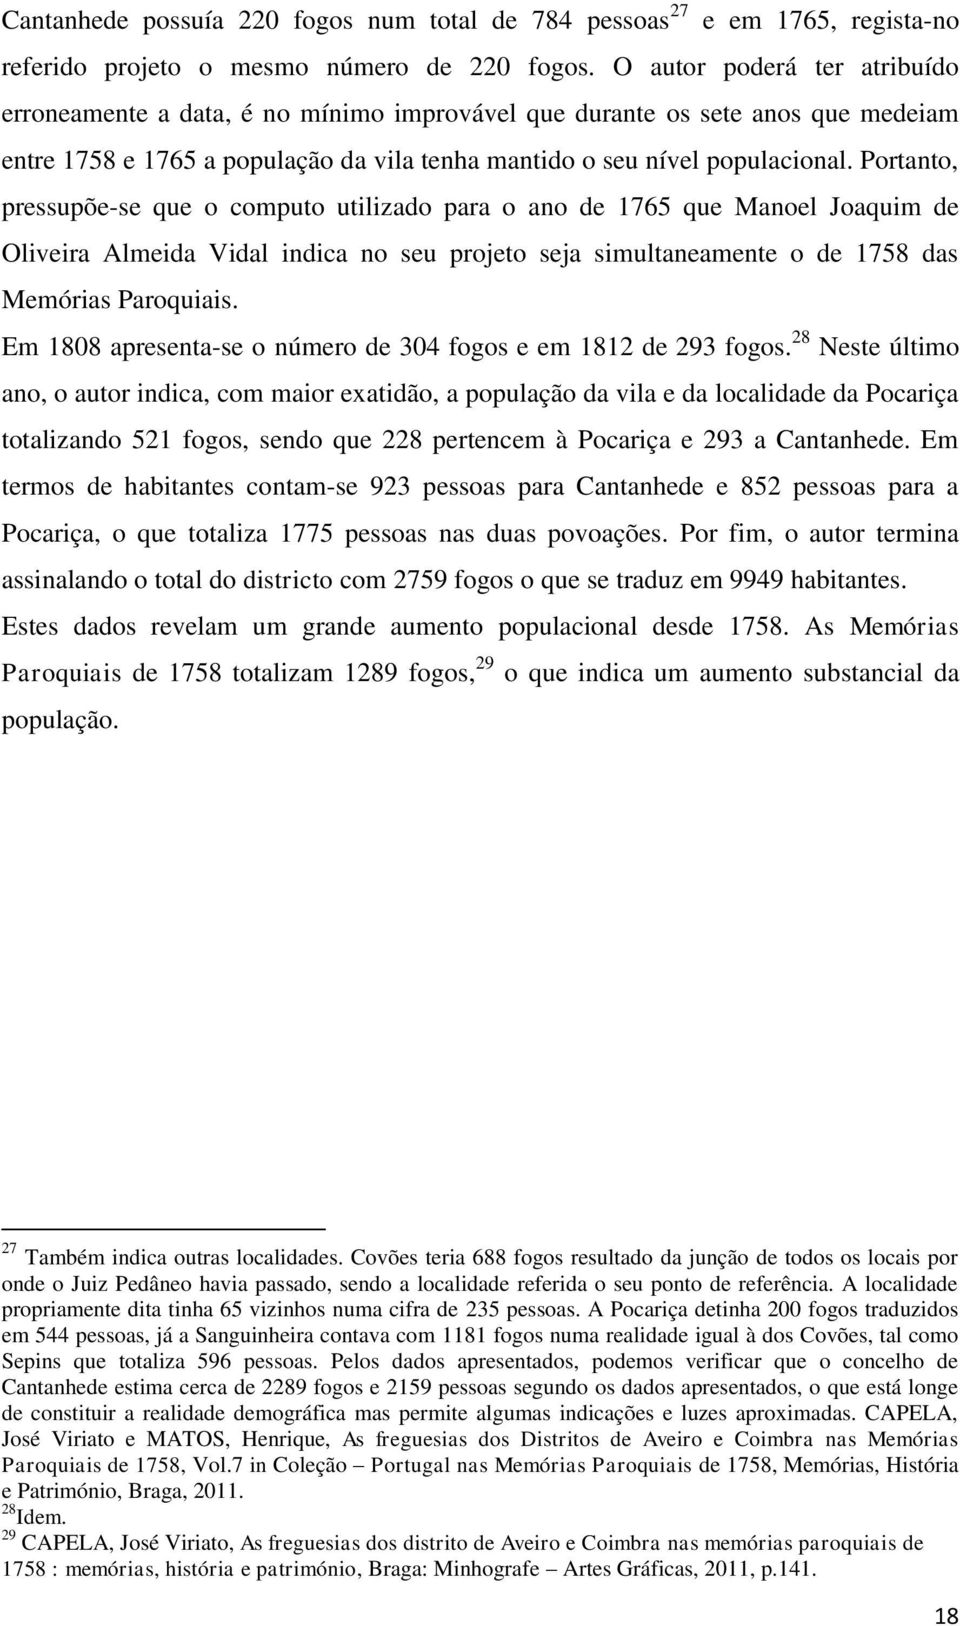 Portanto, pressupõe-se que o computo utilizado para o ano de 1765 que Manoel Joaquim de Oliveira Almeida Vidal indica no seu projeto seja simultaneamente o de 1758 das Memórias Paroquiais.